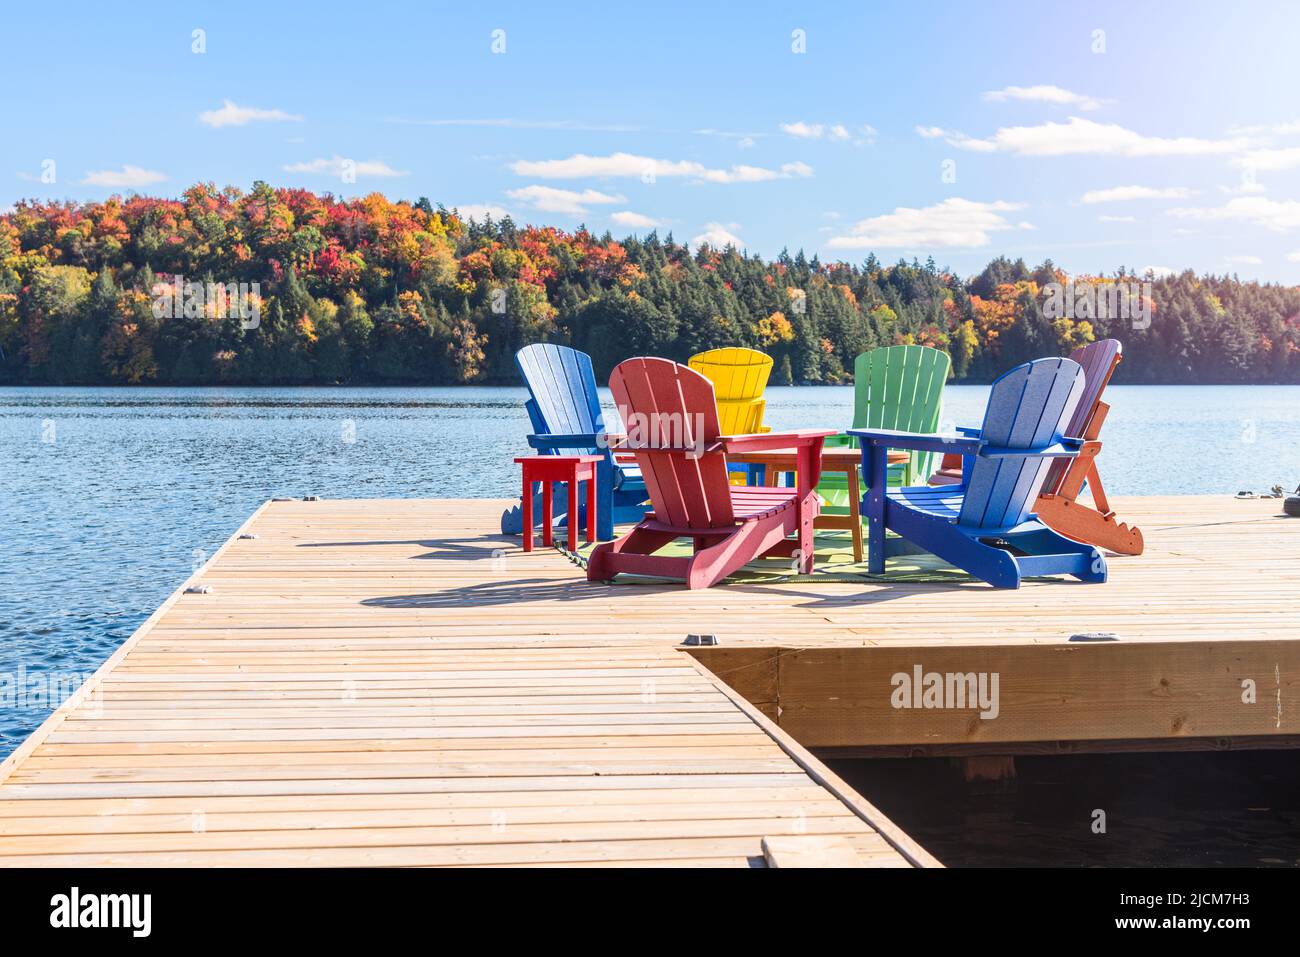 Coloristas sillas Adirondack alrededor de una mesa en un embarcadero de madera en un lago en un claro día de otoño. Foto de stock